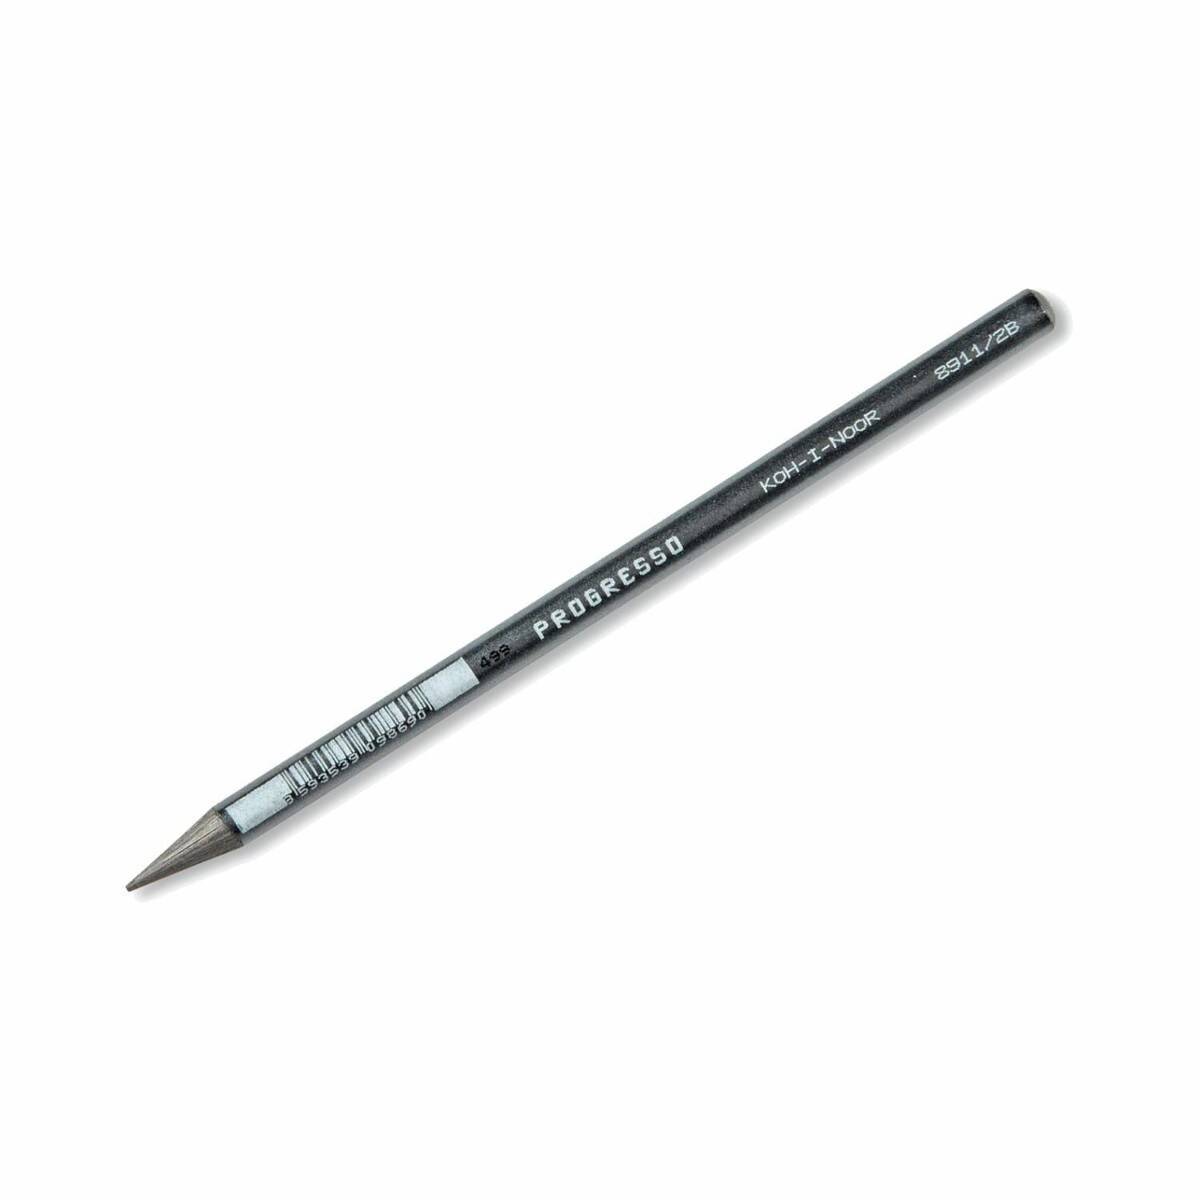 Ołówek Bezdrzewny 2B PROGRESSO 8911/2B